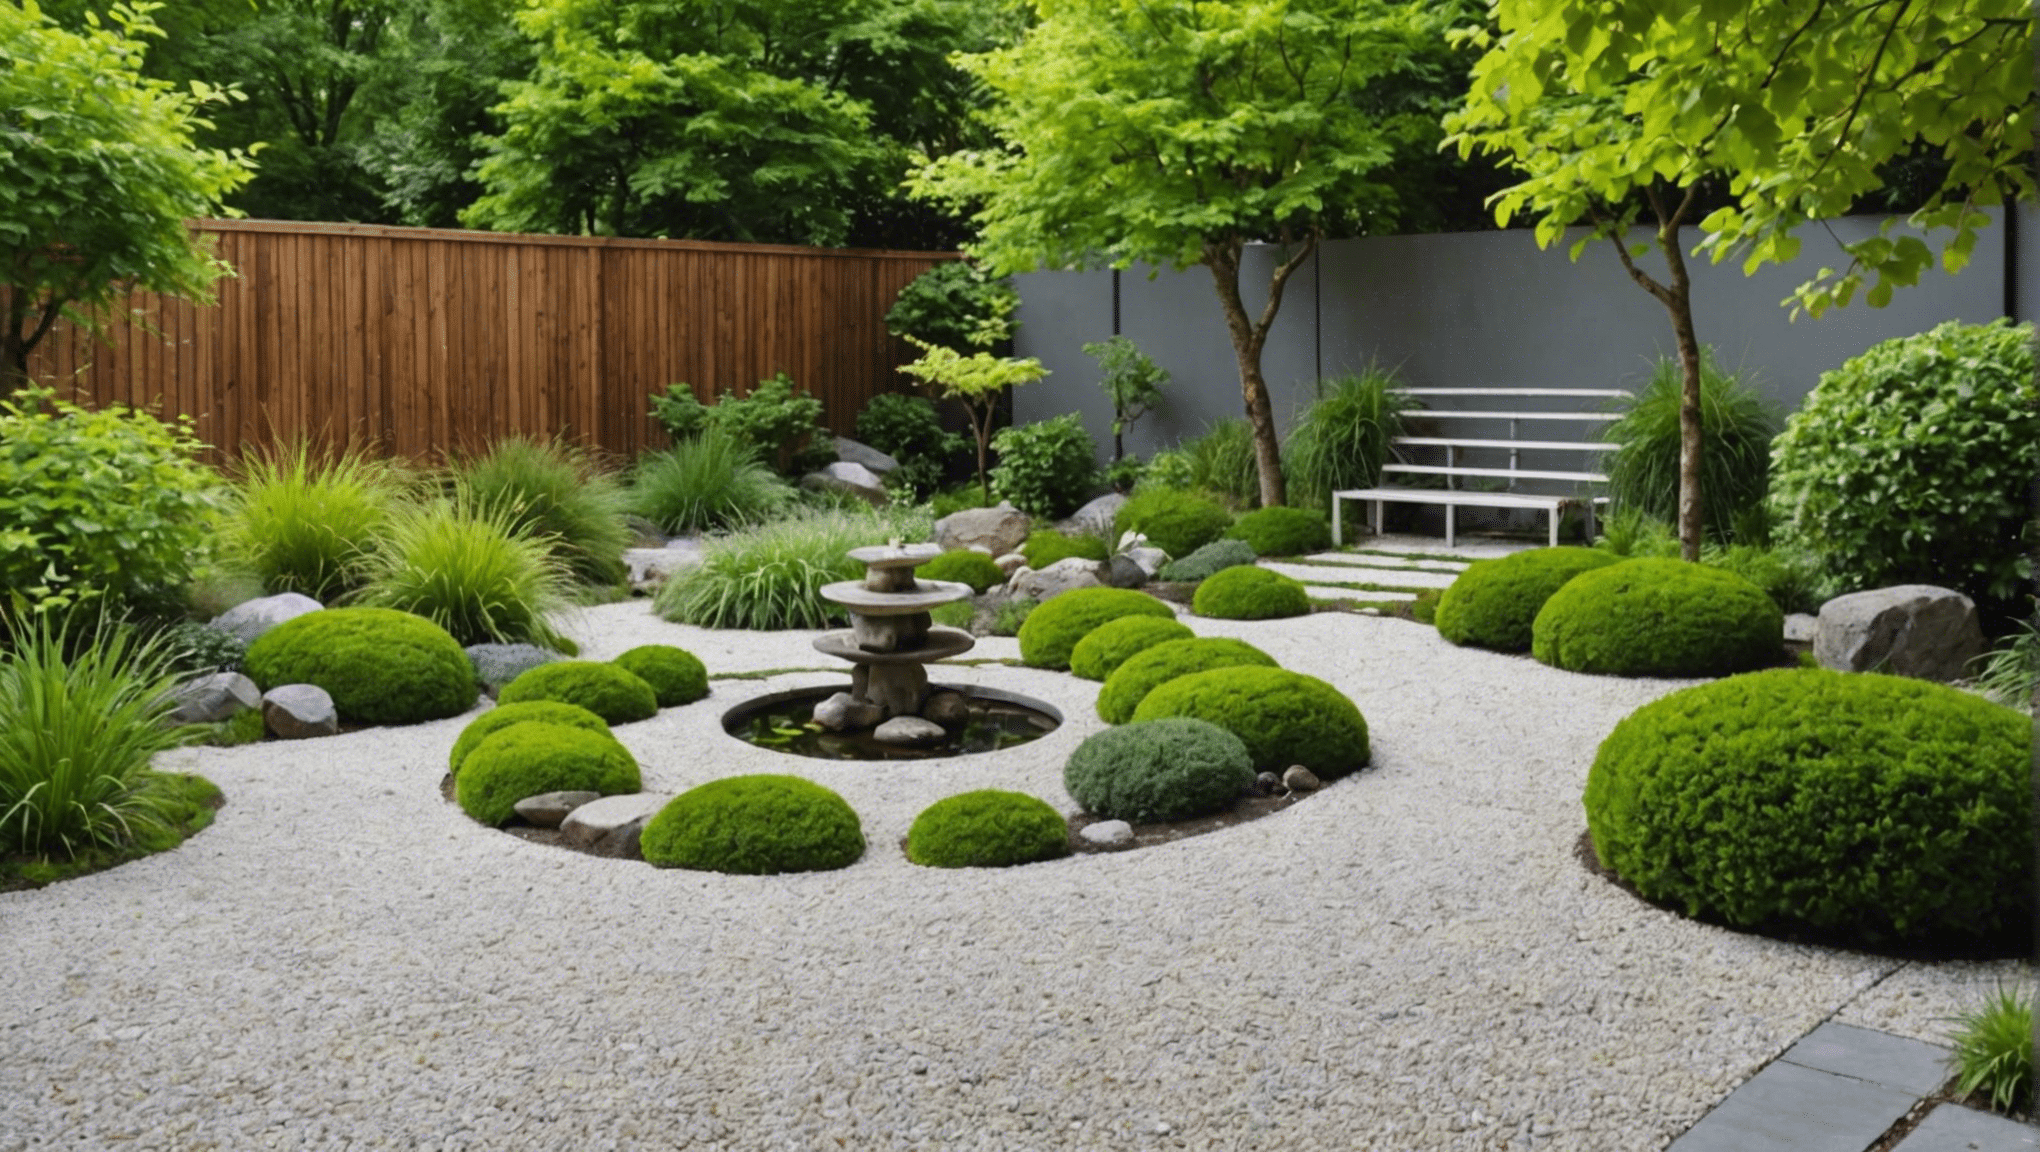 découvrez nos conseils pour aménager un jardin zen chez soi et profiter d'un espace de tranquillité et de sérénité. retrouvez l'harmonie et l'équilibre dans votre jardin zen grâce à nos astuces d'aménagement.